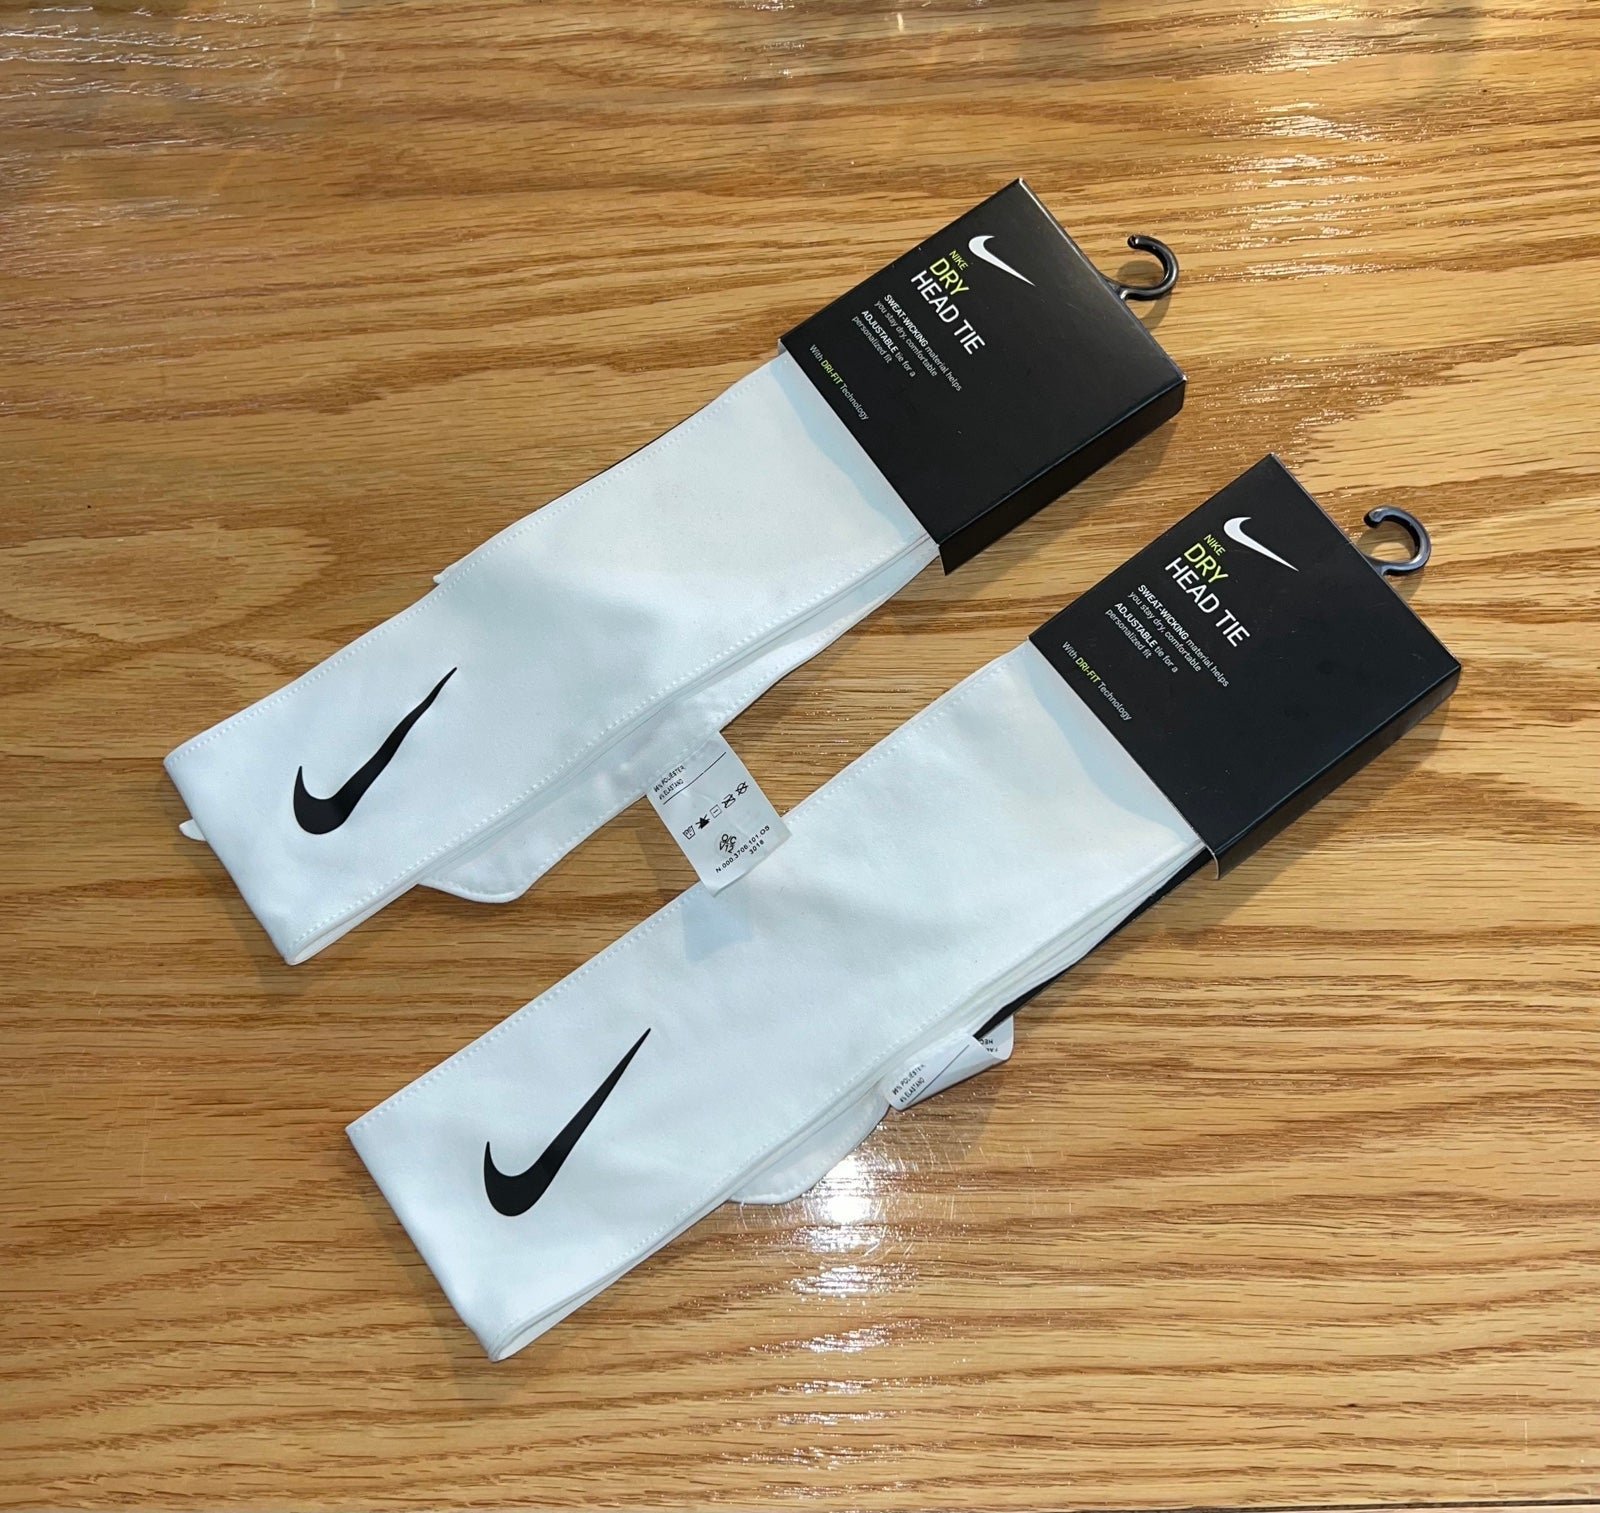 (2) NEW Nike Dri-Fit Dry Head Tie Tennis Headband White/Black Swoosh Sweatband 8RPjHX3PN